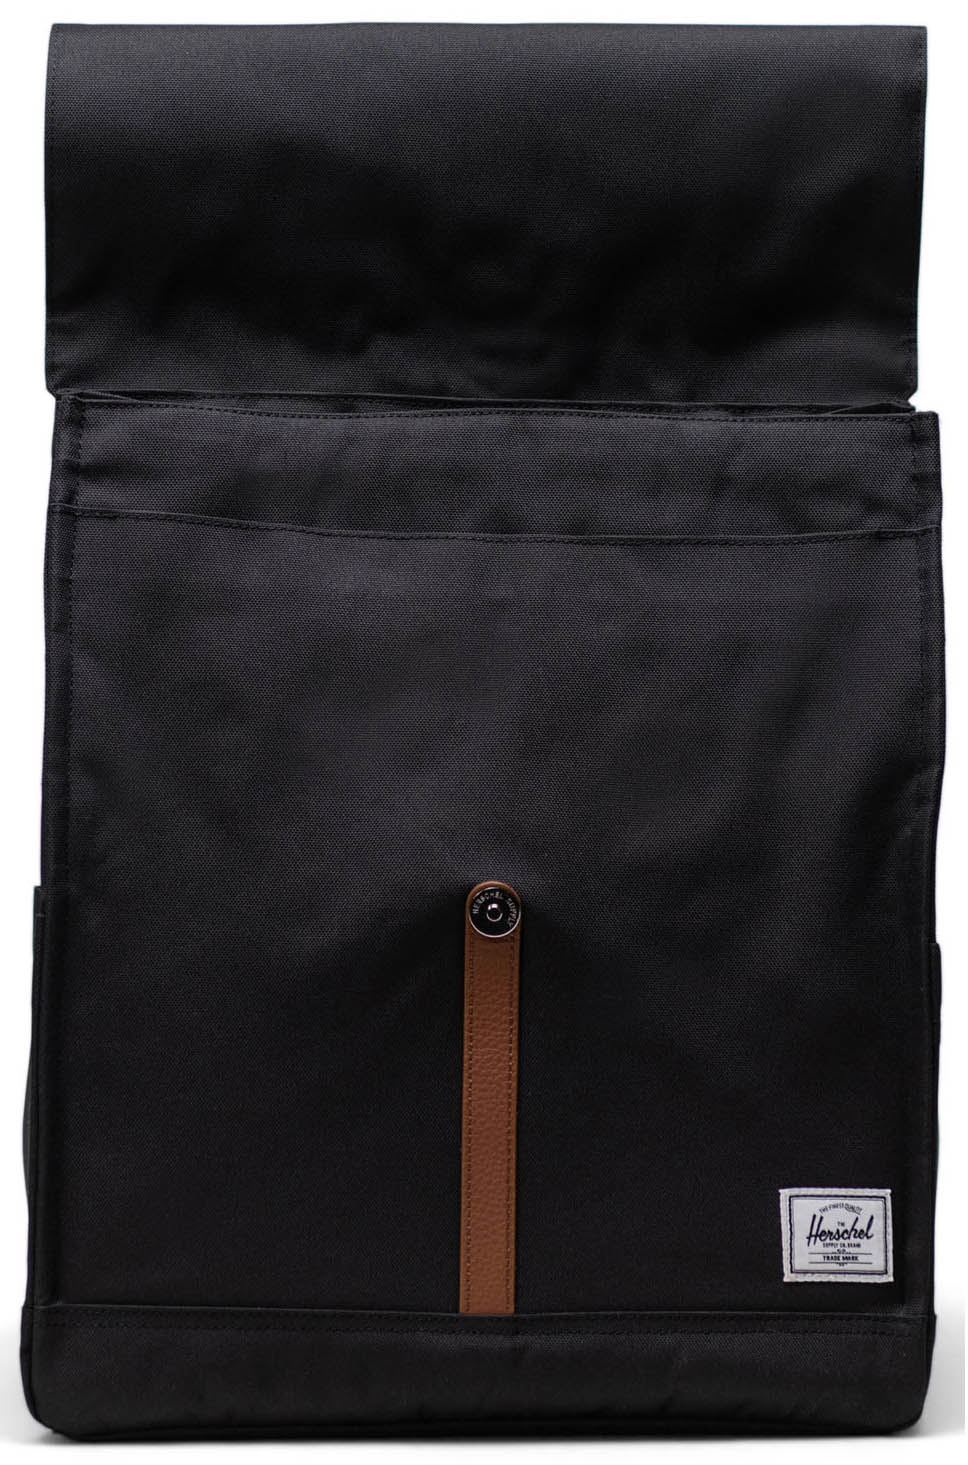 Herschel City Backpack - Black